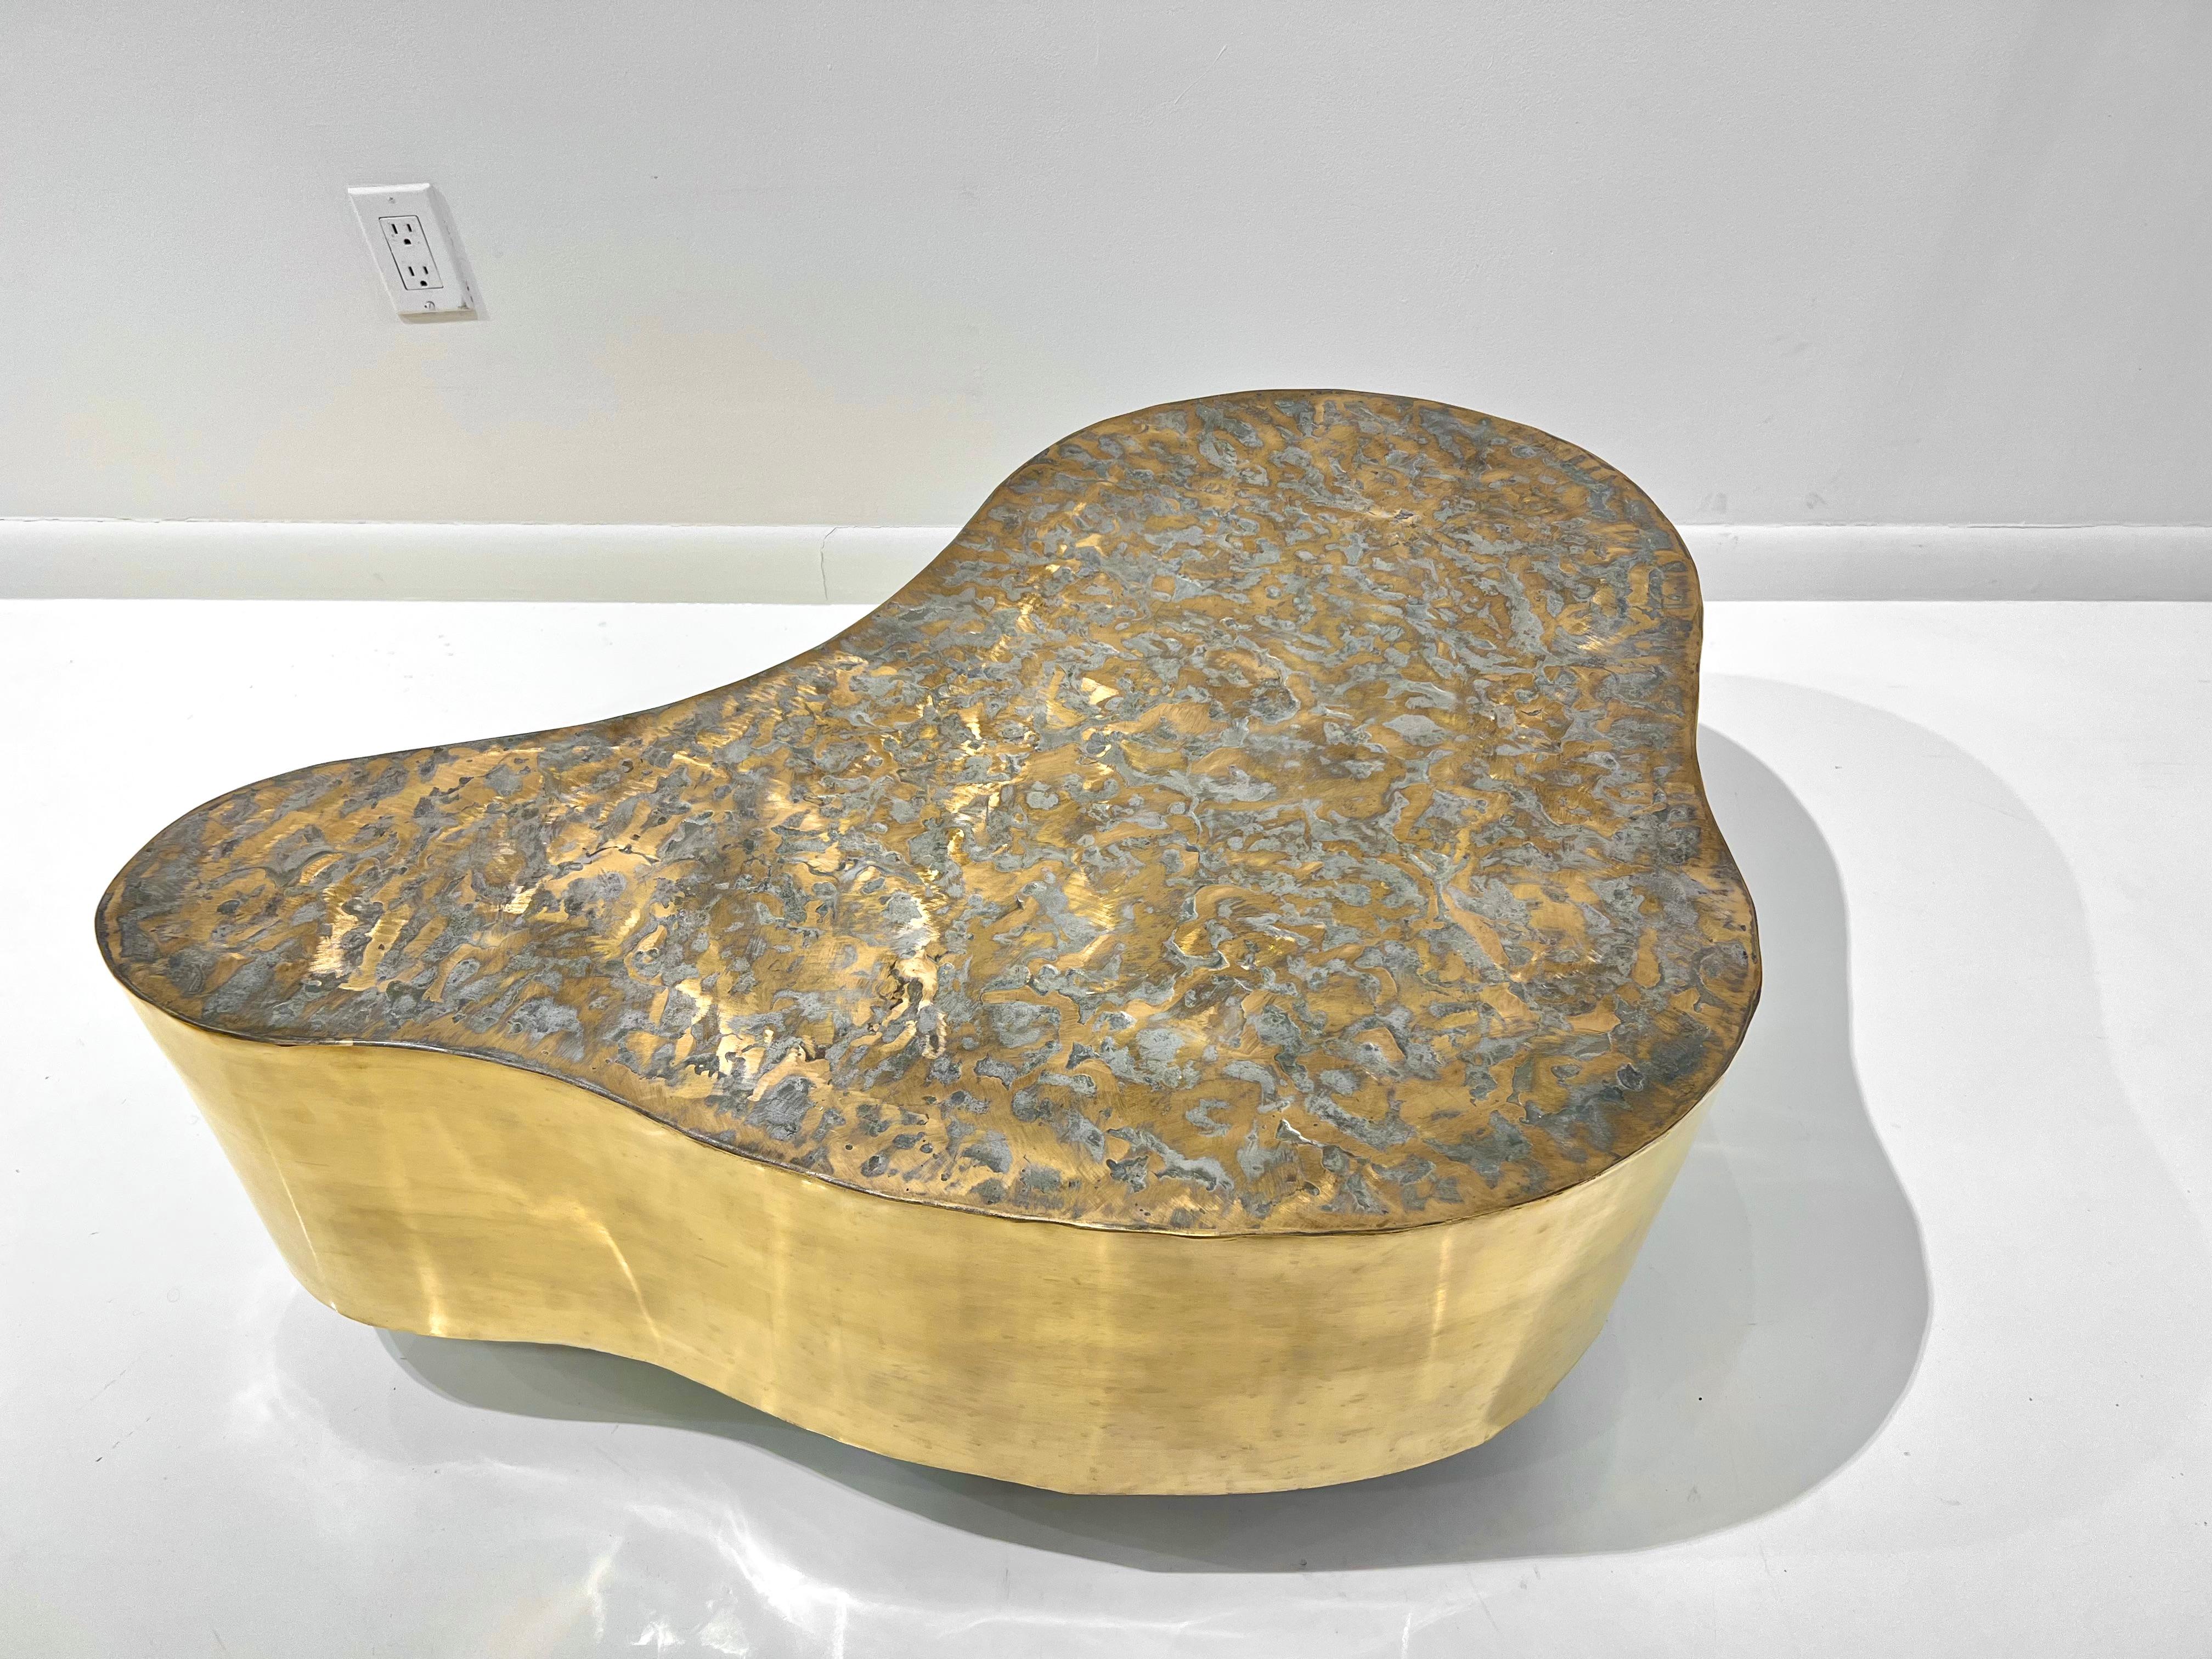 Seltener biomorpher Couchtisch aus Bronze von Silas Seandel aus den 1960er Jahren, patiniert mit gebürsteter, strukturierter Platte.
Dies ist ein kleinerer SINGLE-Tisch aus einem zweiteiligen Set. Der Tisch steht auf versteckten Rollen und kann